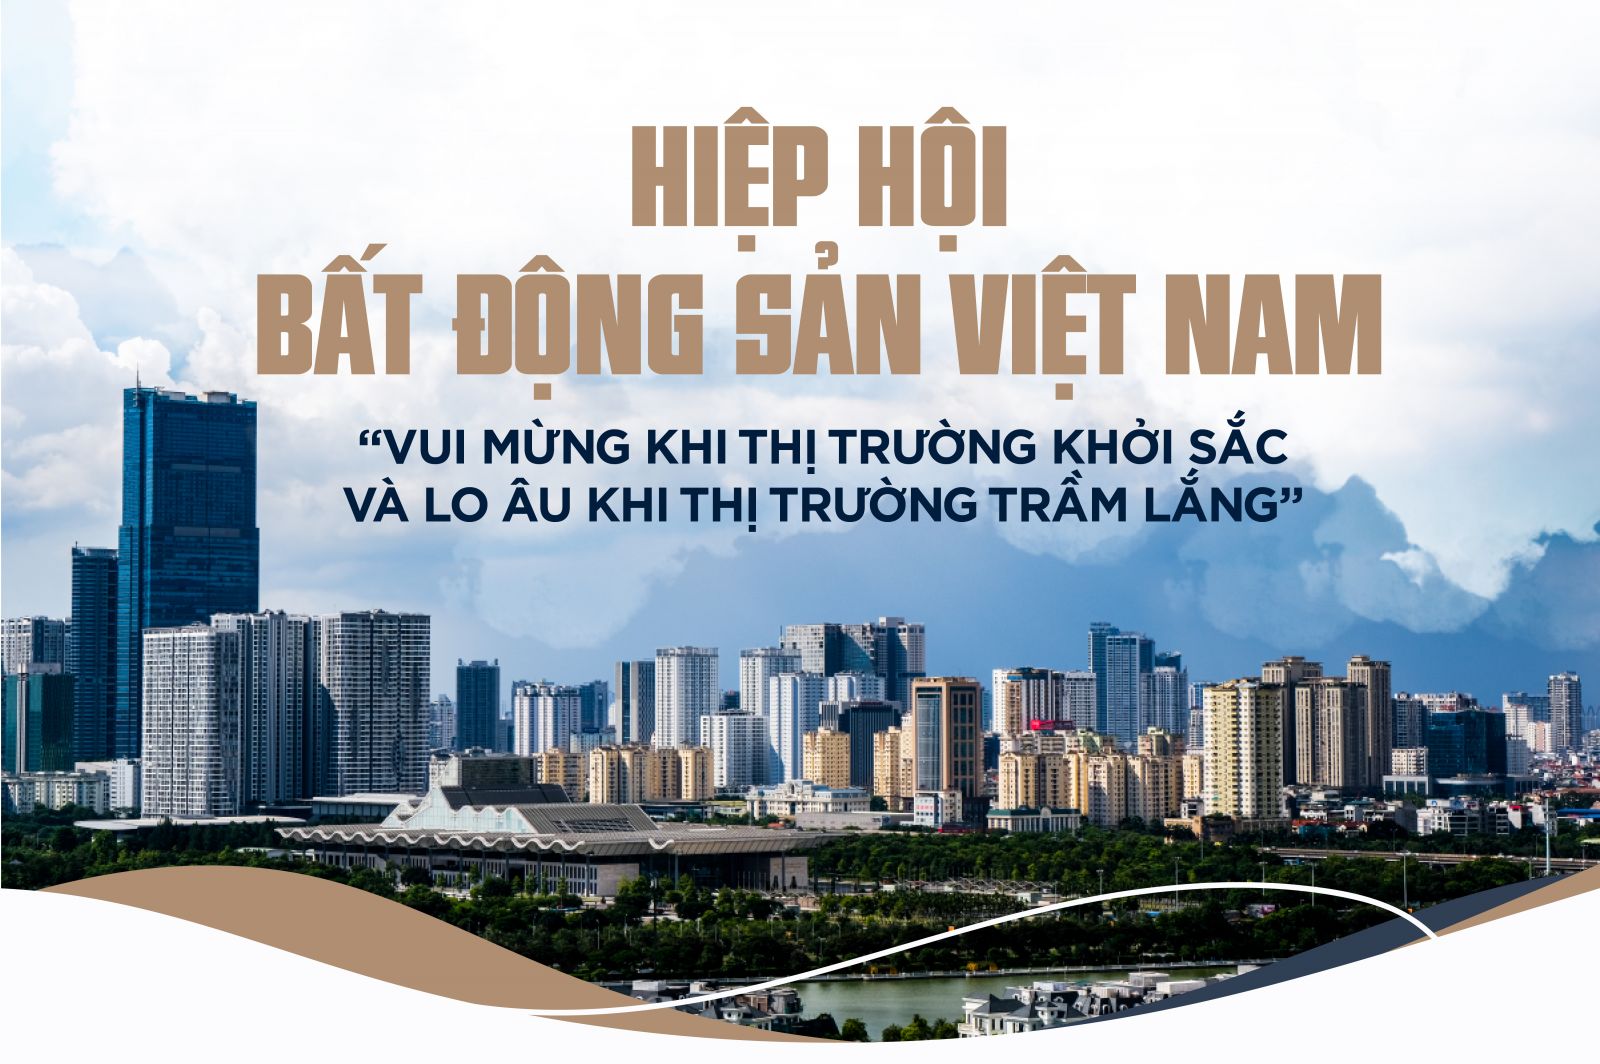 Hiệp hội Bất động sản Việt Nam “vui mừng khi thị trường khởi sắc và lo âu khi thị trường trầm lắng”